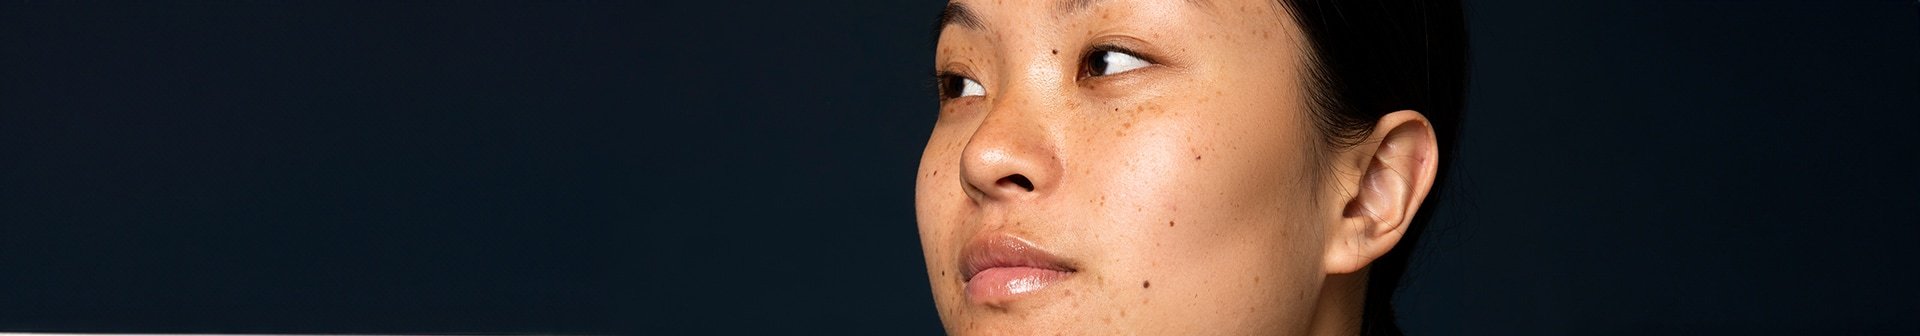 Mund und Nase einer Frau mit Pigmentflecken vor einem schwarzen Hintergrund